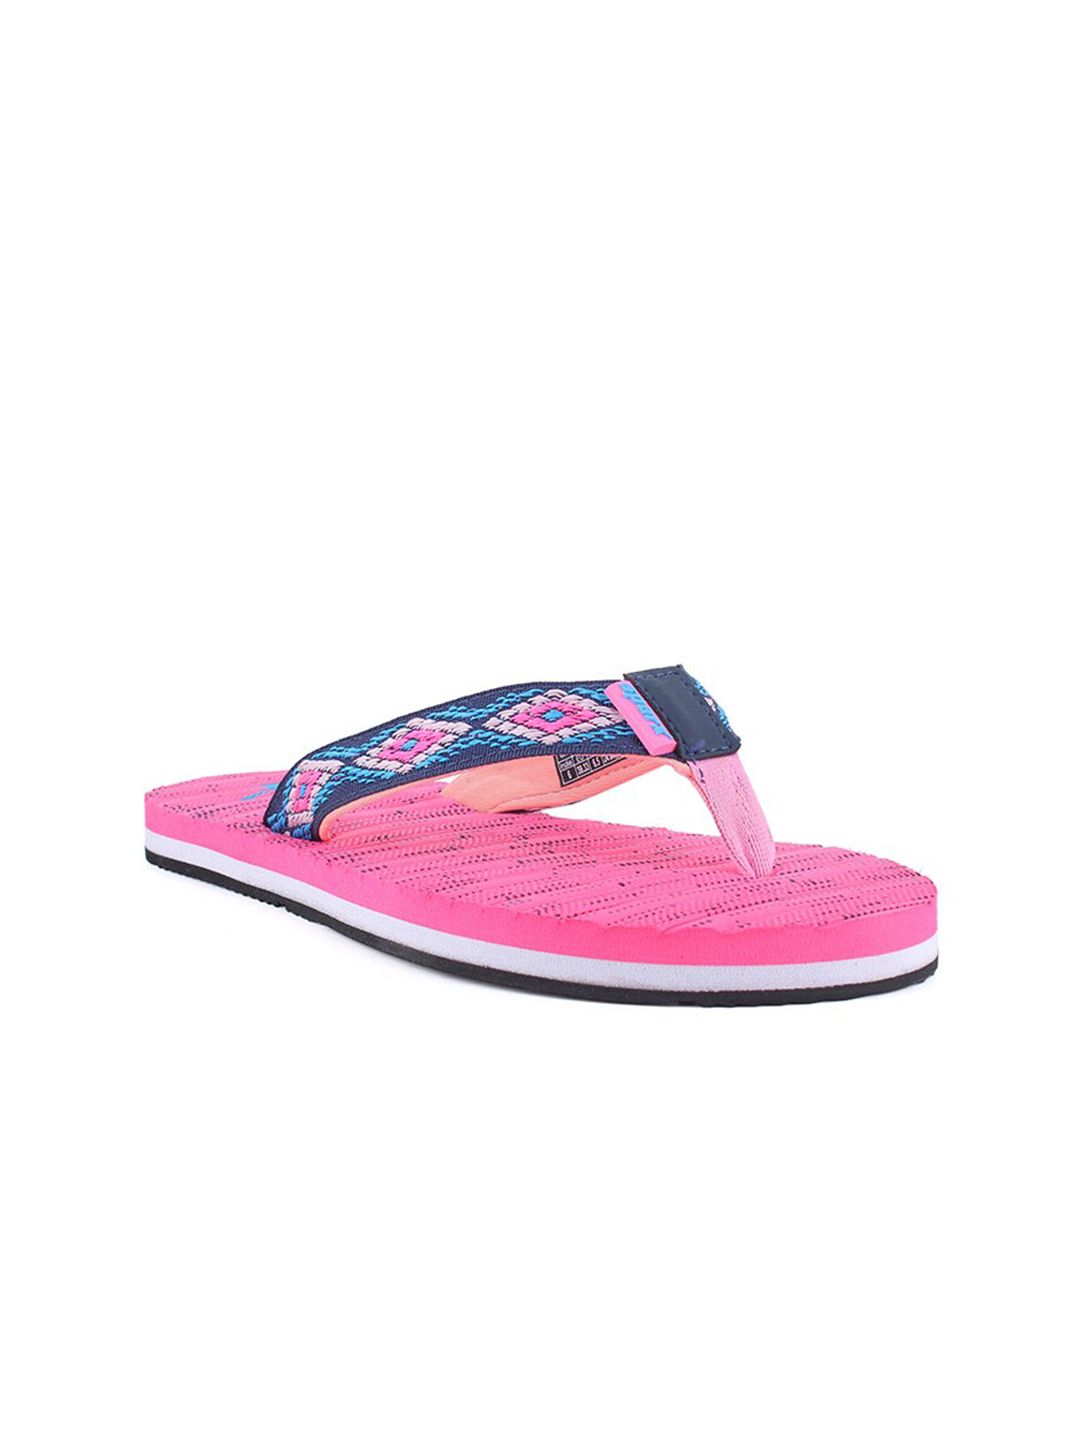 Sparx Women Pink & Blue Thong Flip-Flops Price in India